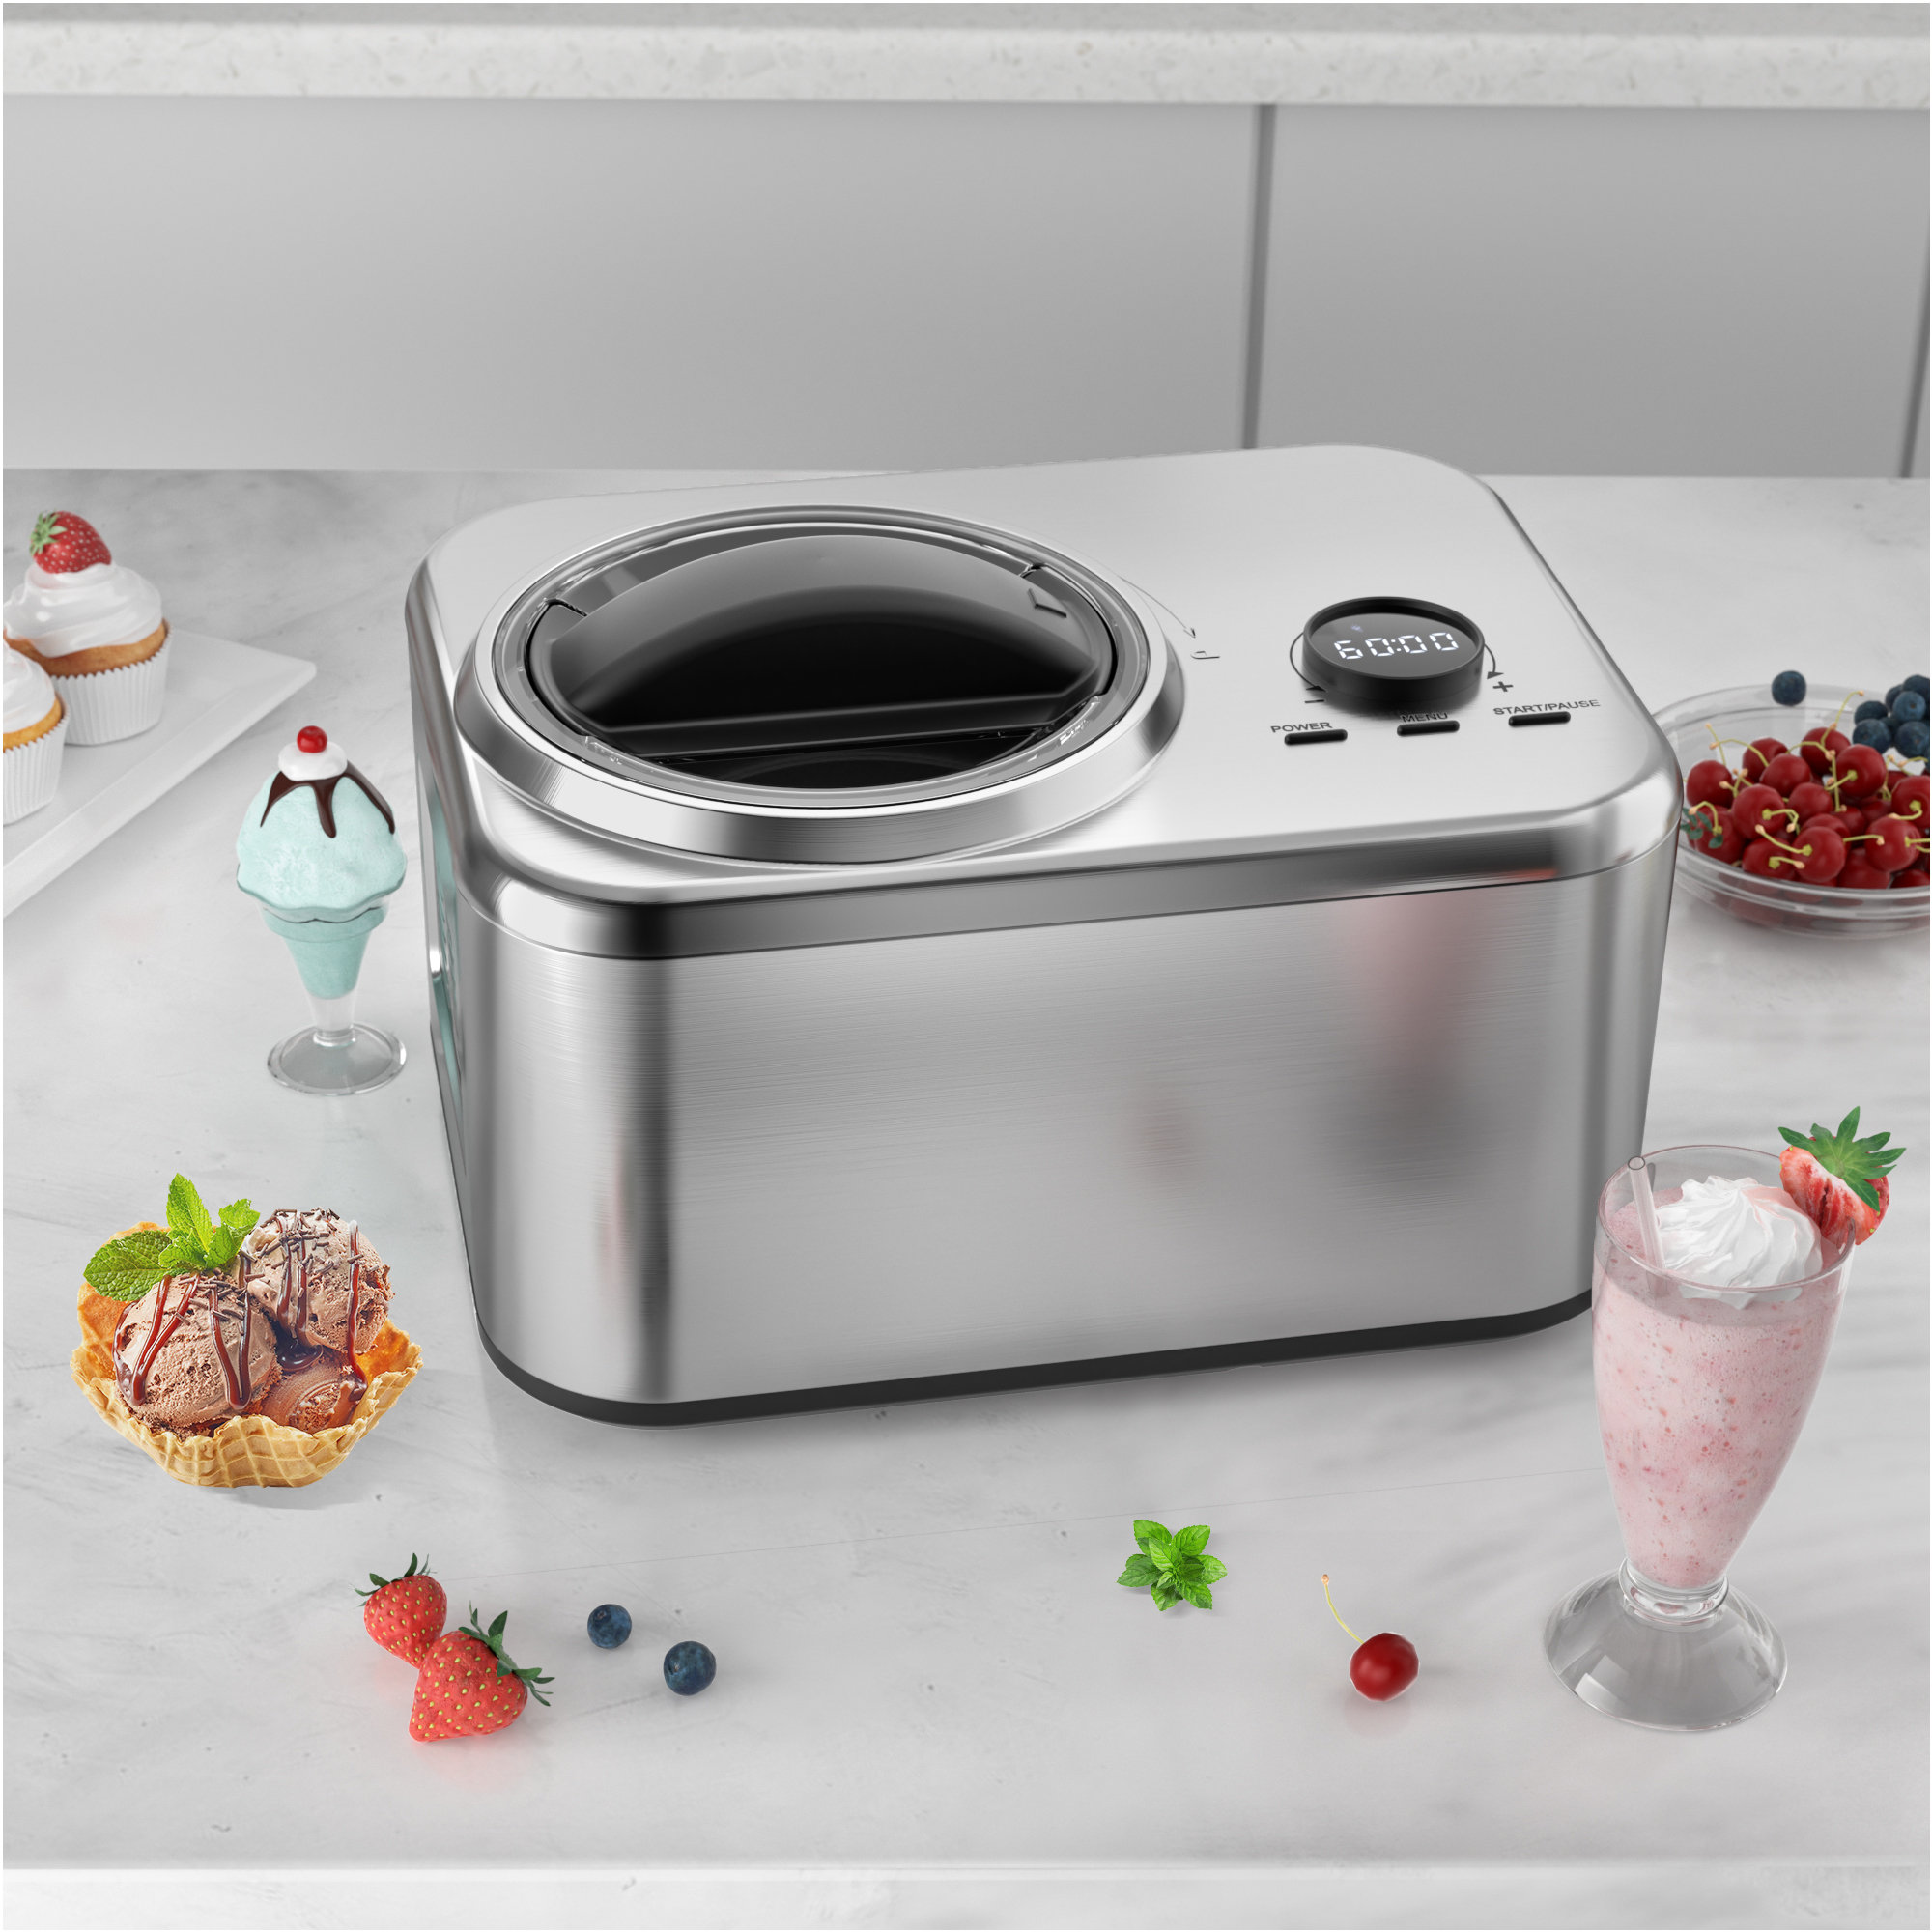 https://assets.wfcdn.com/im/46305105/compr-r85/2426/242647404/ice-cream-and-gelato-maker-machine.jpg